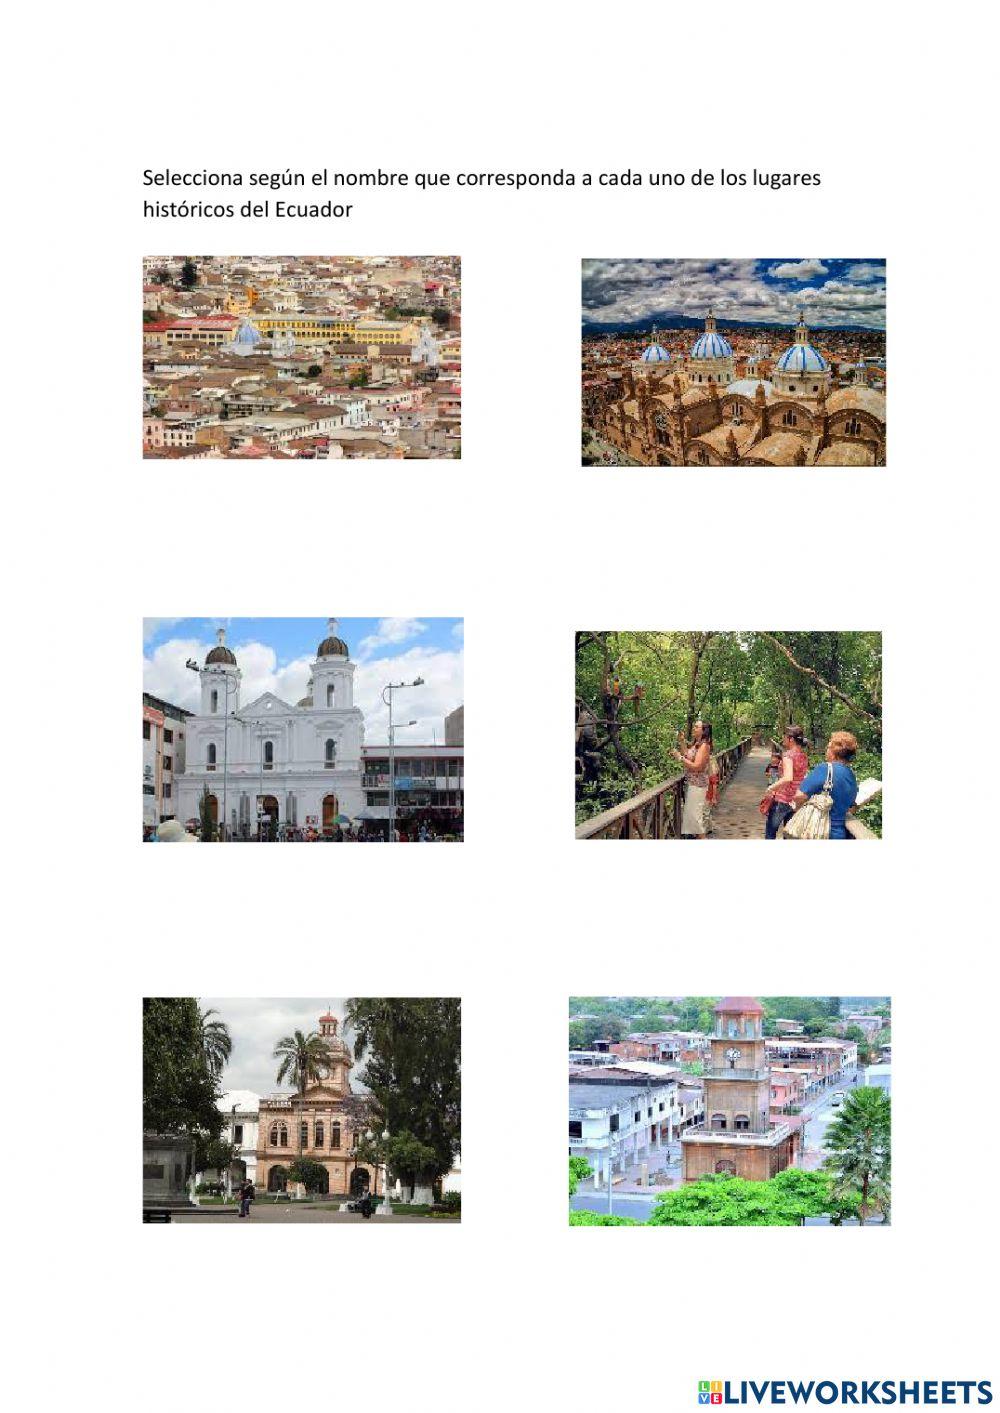 Personajes destacados y Lugares historicos del Ecuador